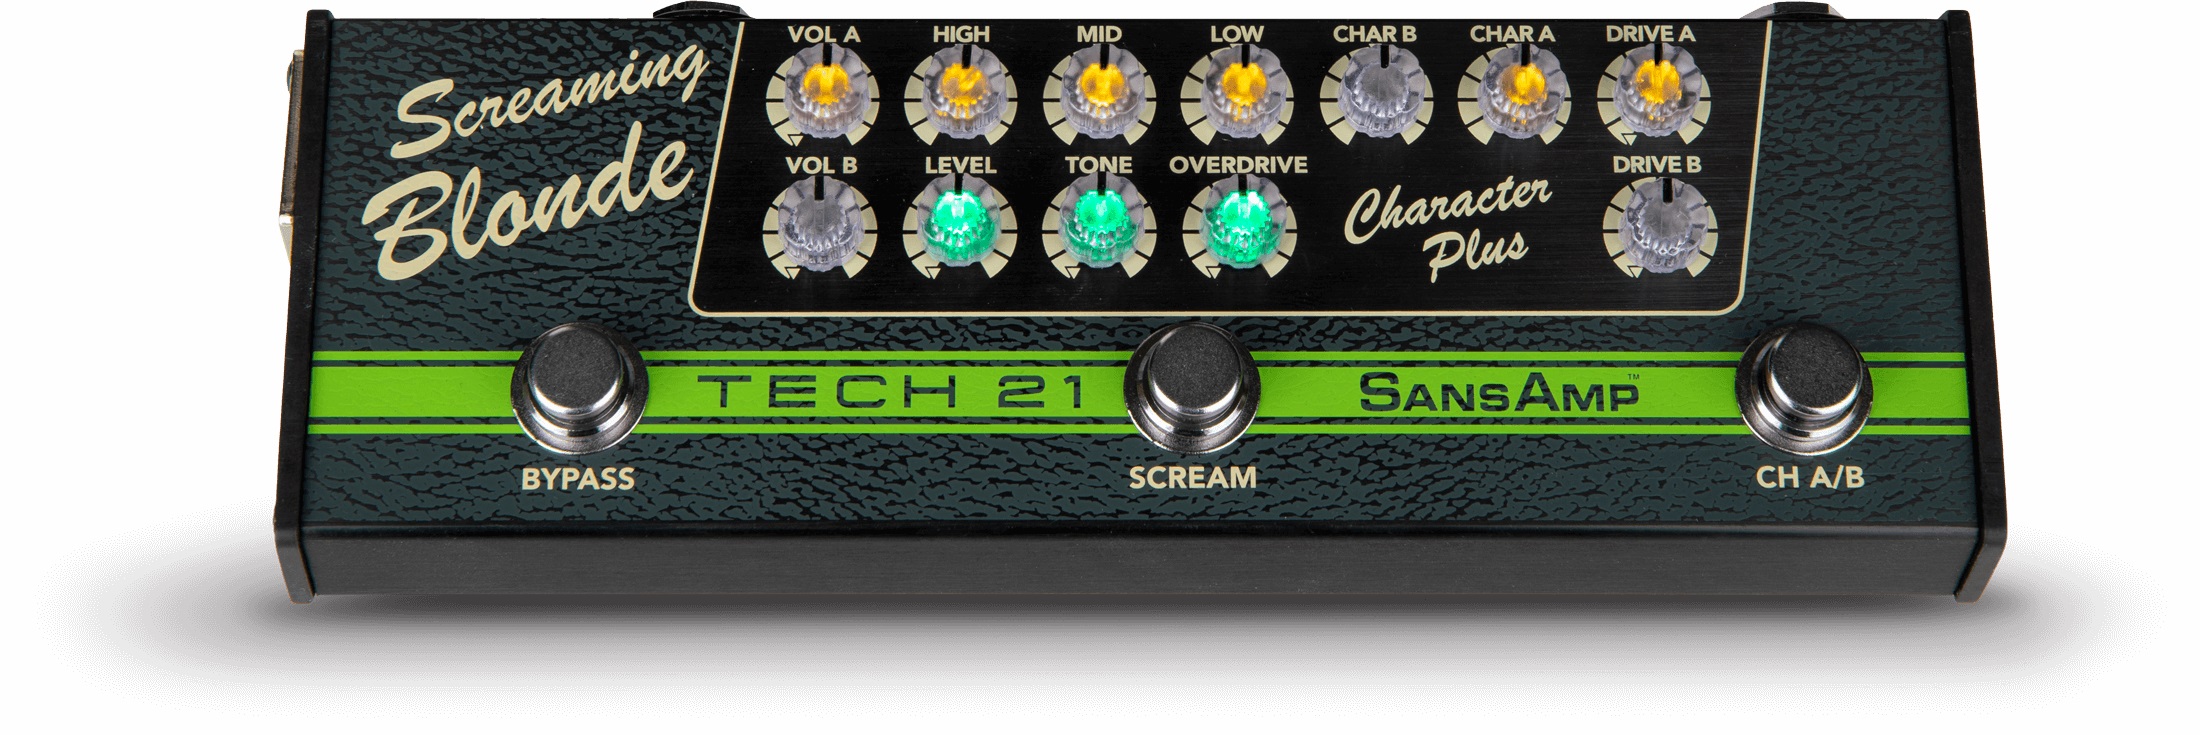 Tech 21 Screaming Blonde Character Series - Simulacion de modelado de amplificador de guitarra - Variation 1